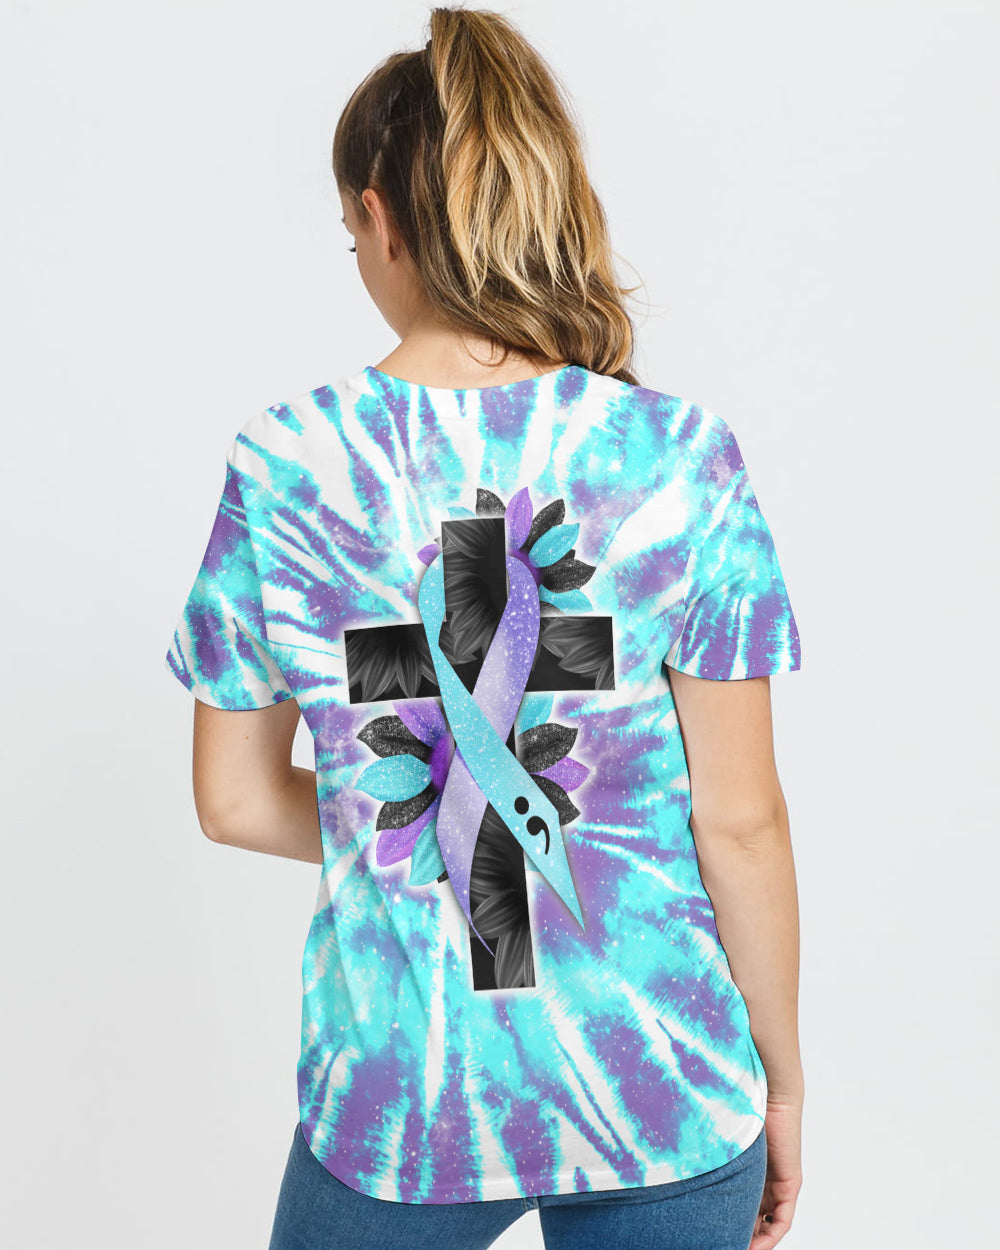 Faith Cross Sunflower Full Tie Dye Women's Suicide Prevention Awareness Tshirt